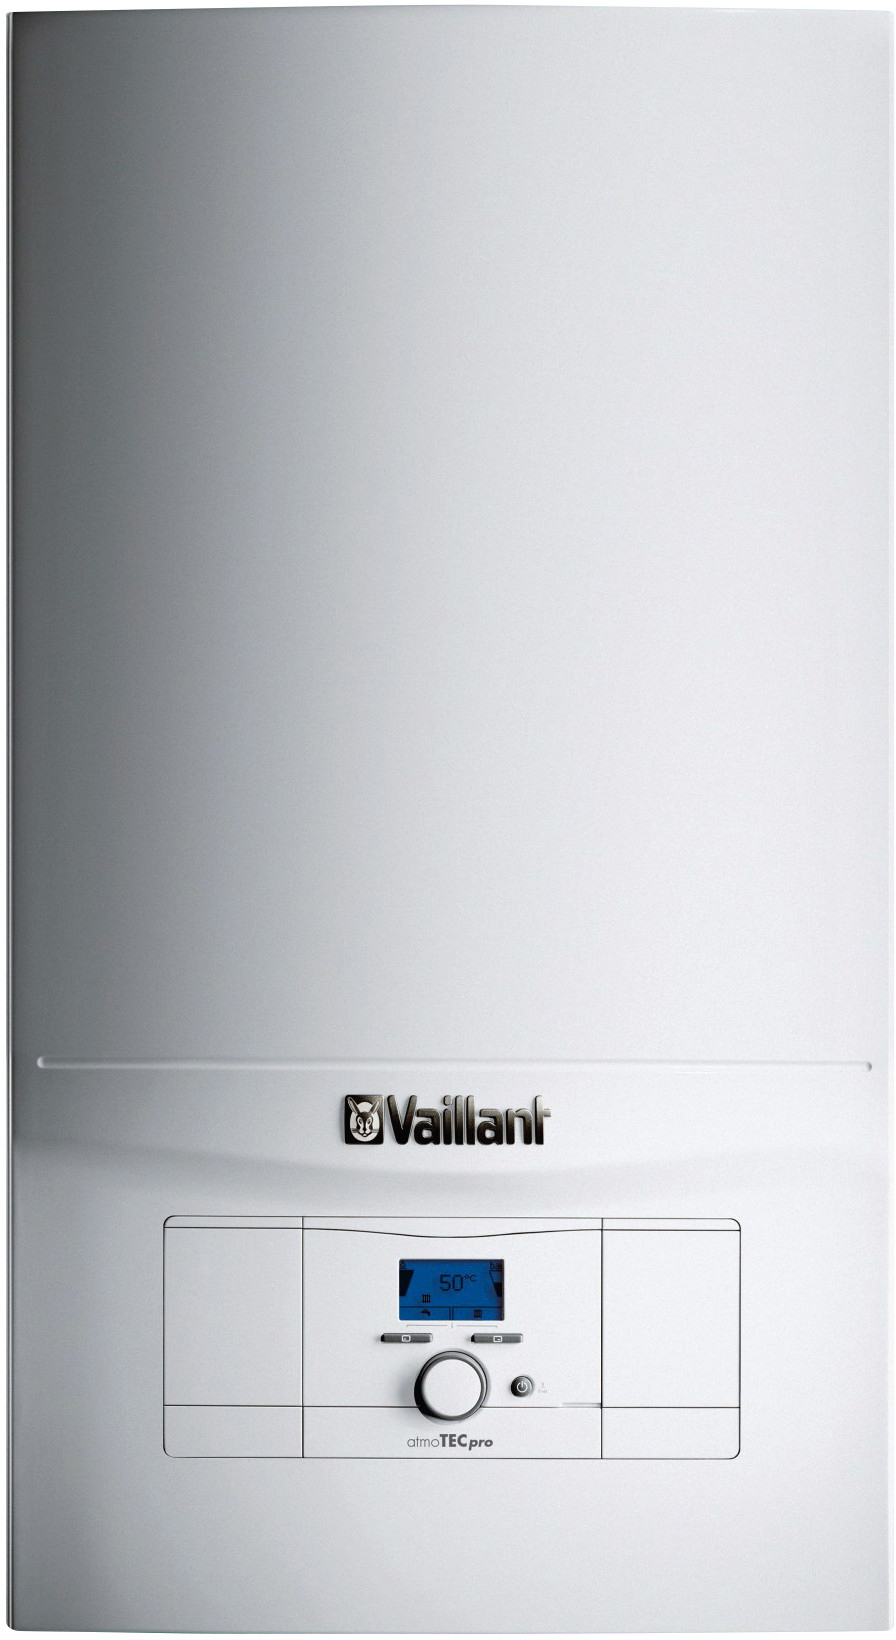 Газовый котел Vaillant atmoTec Pro VUW 280/5-3 в интернет-магазине, главное фото